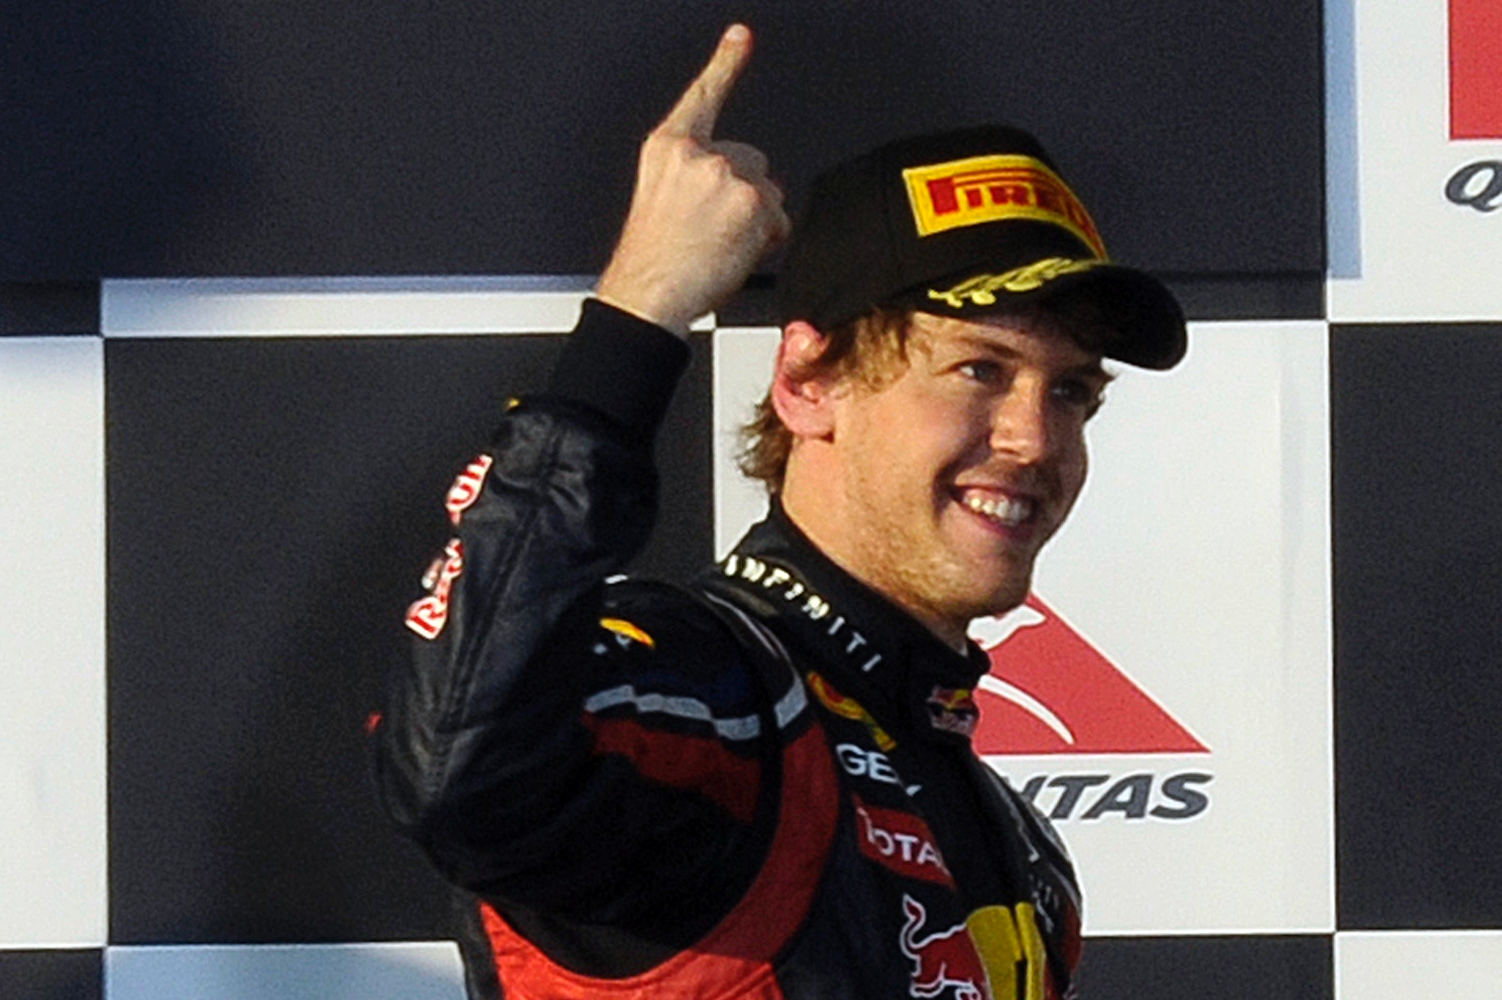 Den regerande världsmästaren Sebastian Vettel vann övertygande och ser riktigt stark ut.